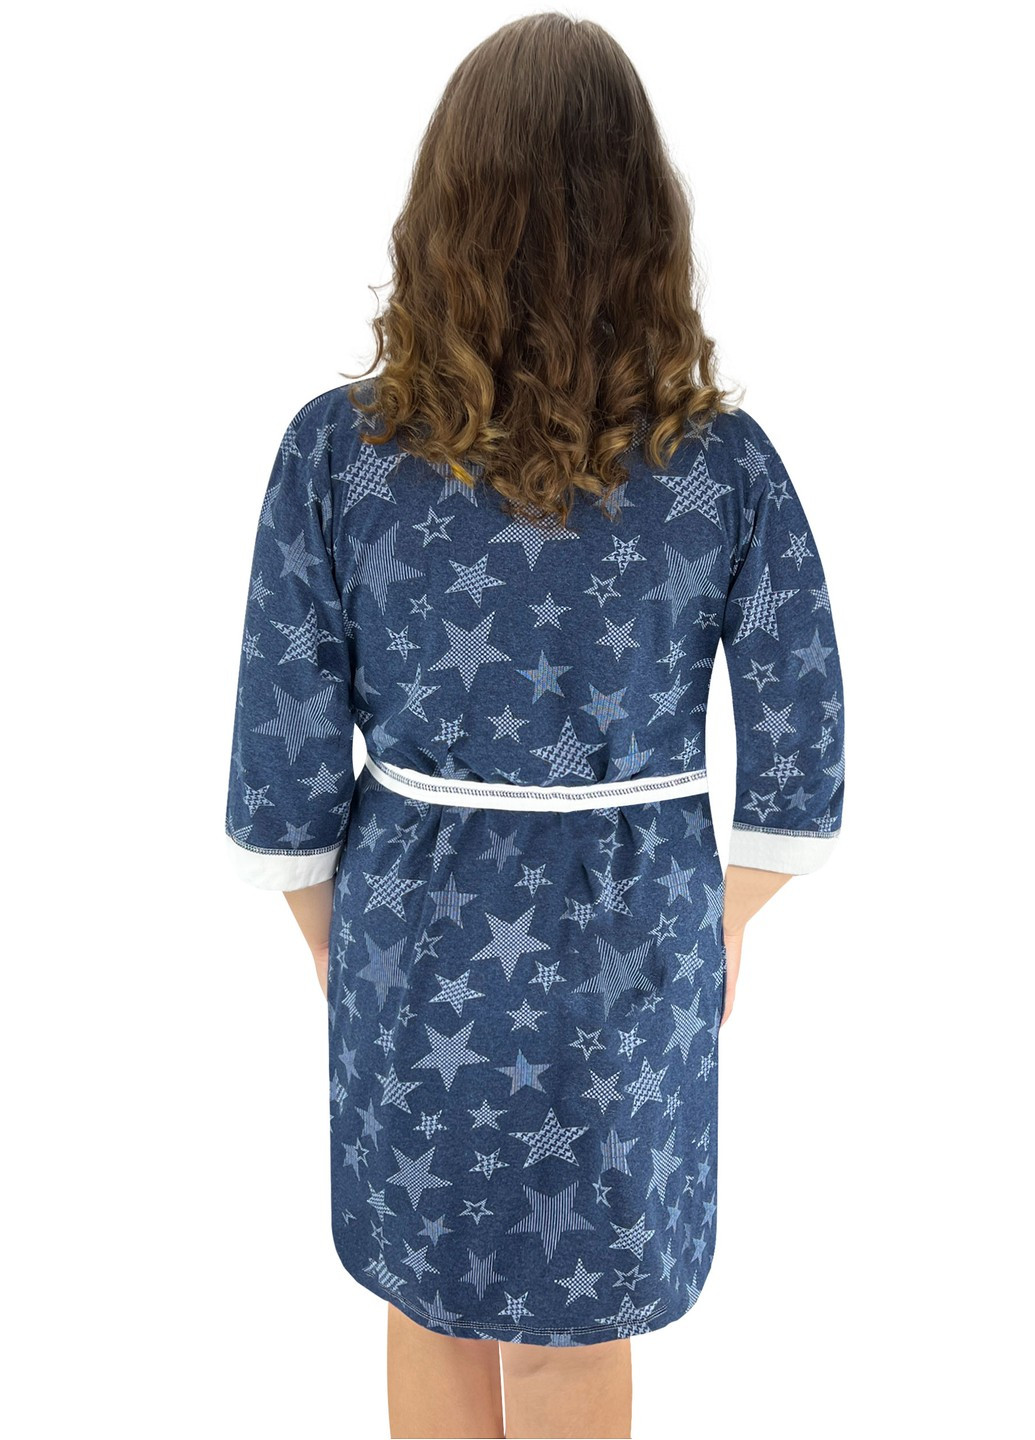 Комплект женский ажур ночная и халат звезда Жемчужина стилей 1421 (274385297)